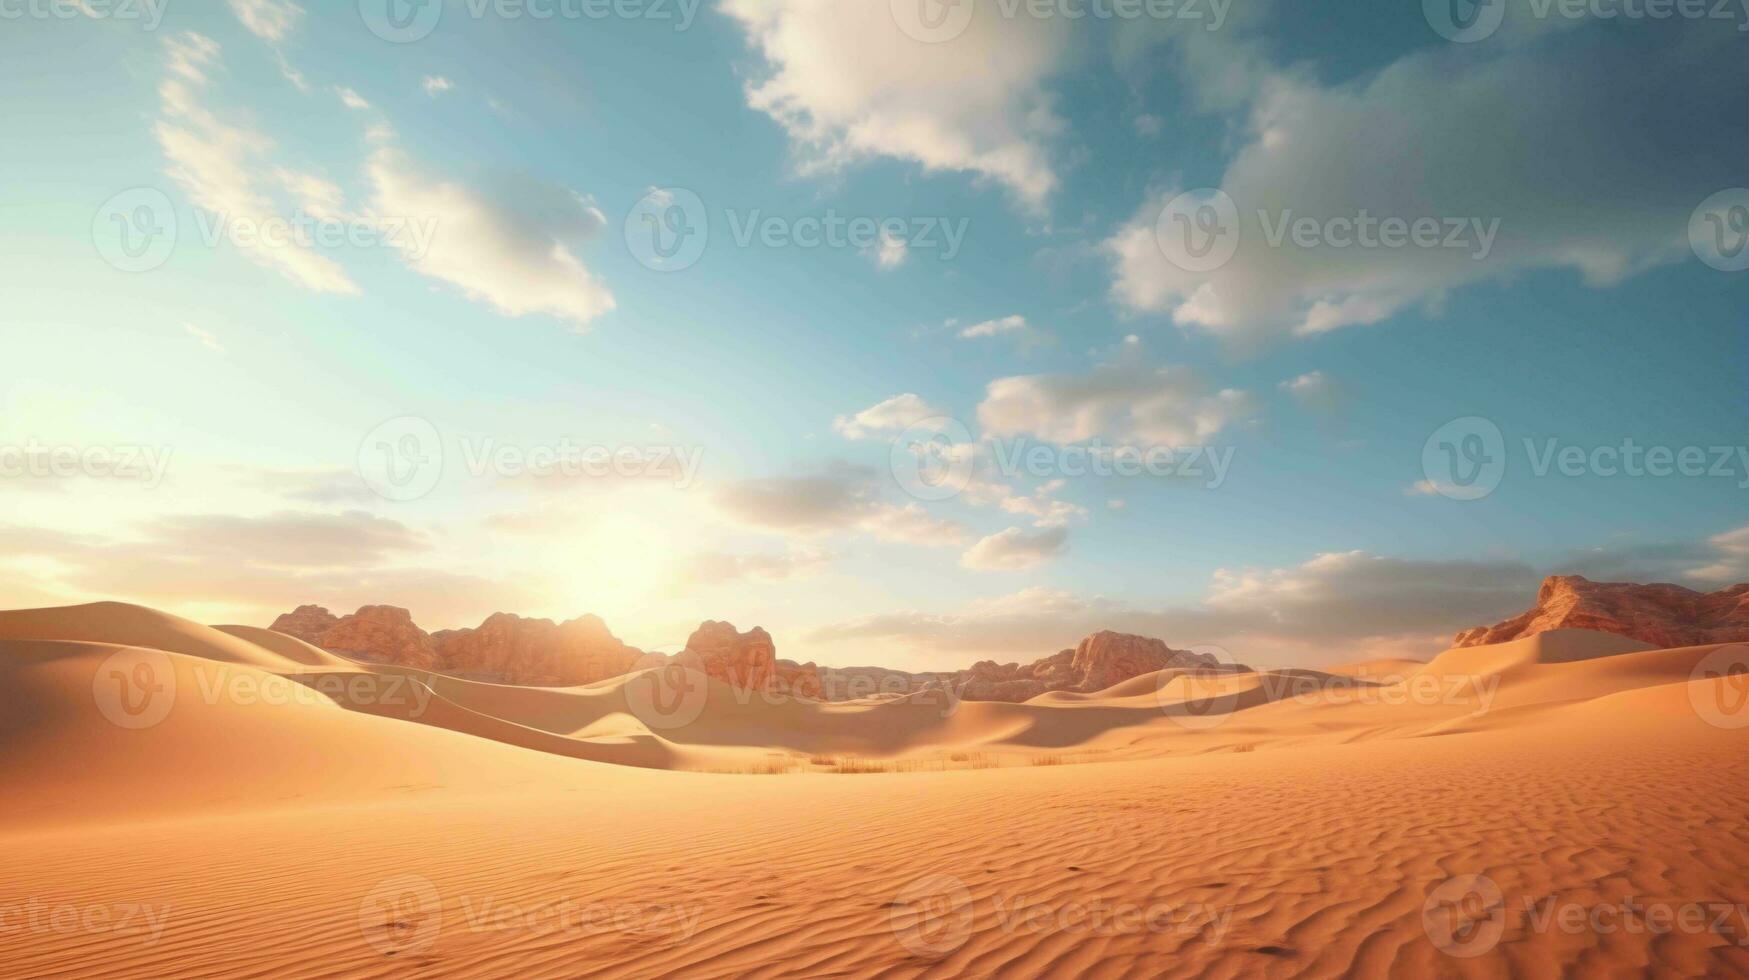 de enorm verleiden van een breed hoek woestijn landschap, werkelijk magisch en boeiend foto